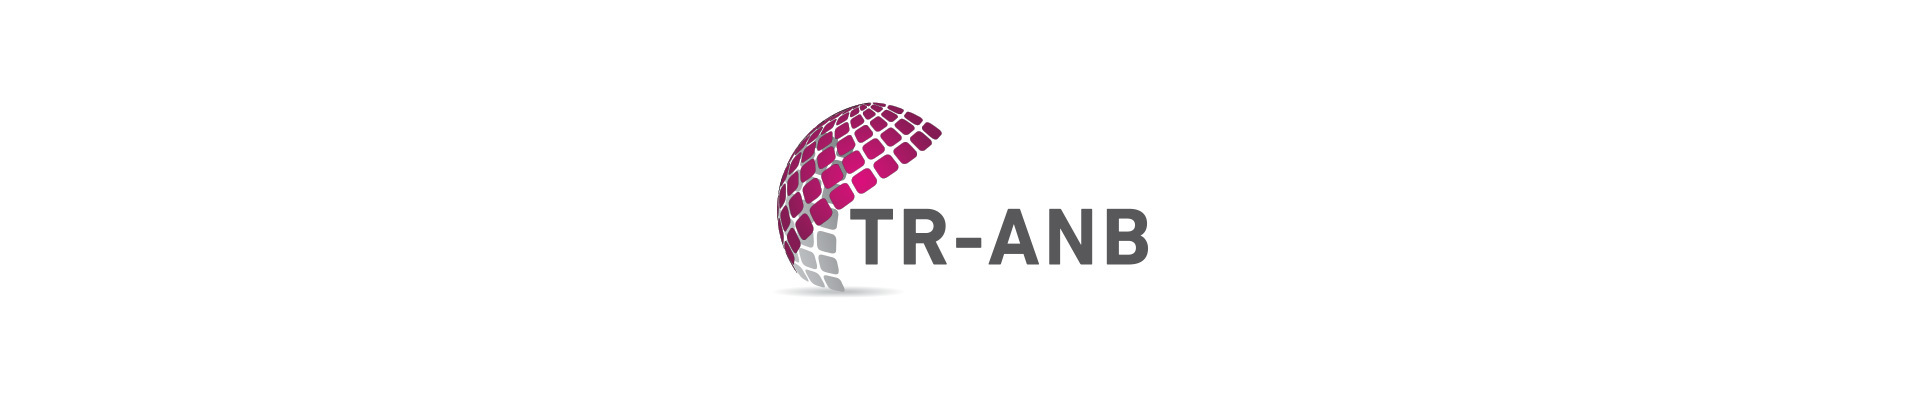 TKTA / TR-ANB /TR-ANBCC Yönetim Kurulu toplantısı Nisan ayında online olarak gerçekleşecektir.